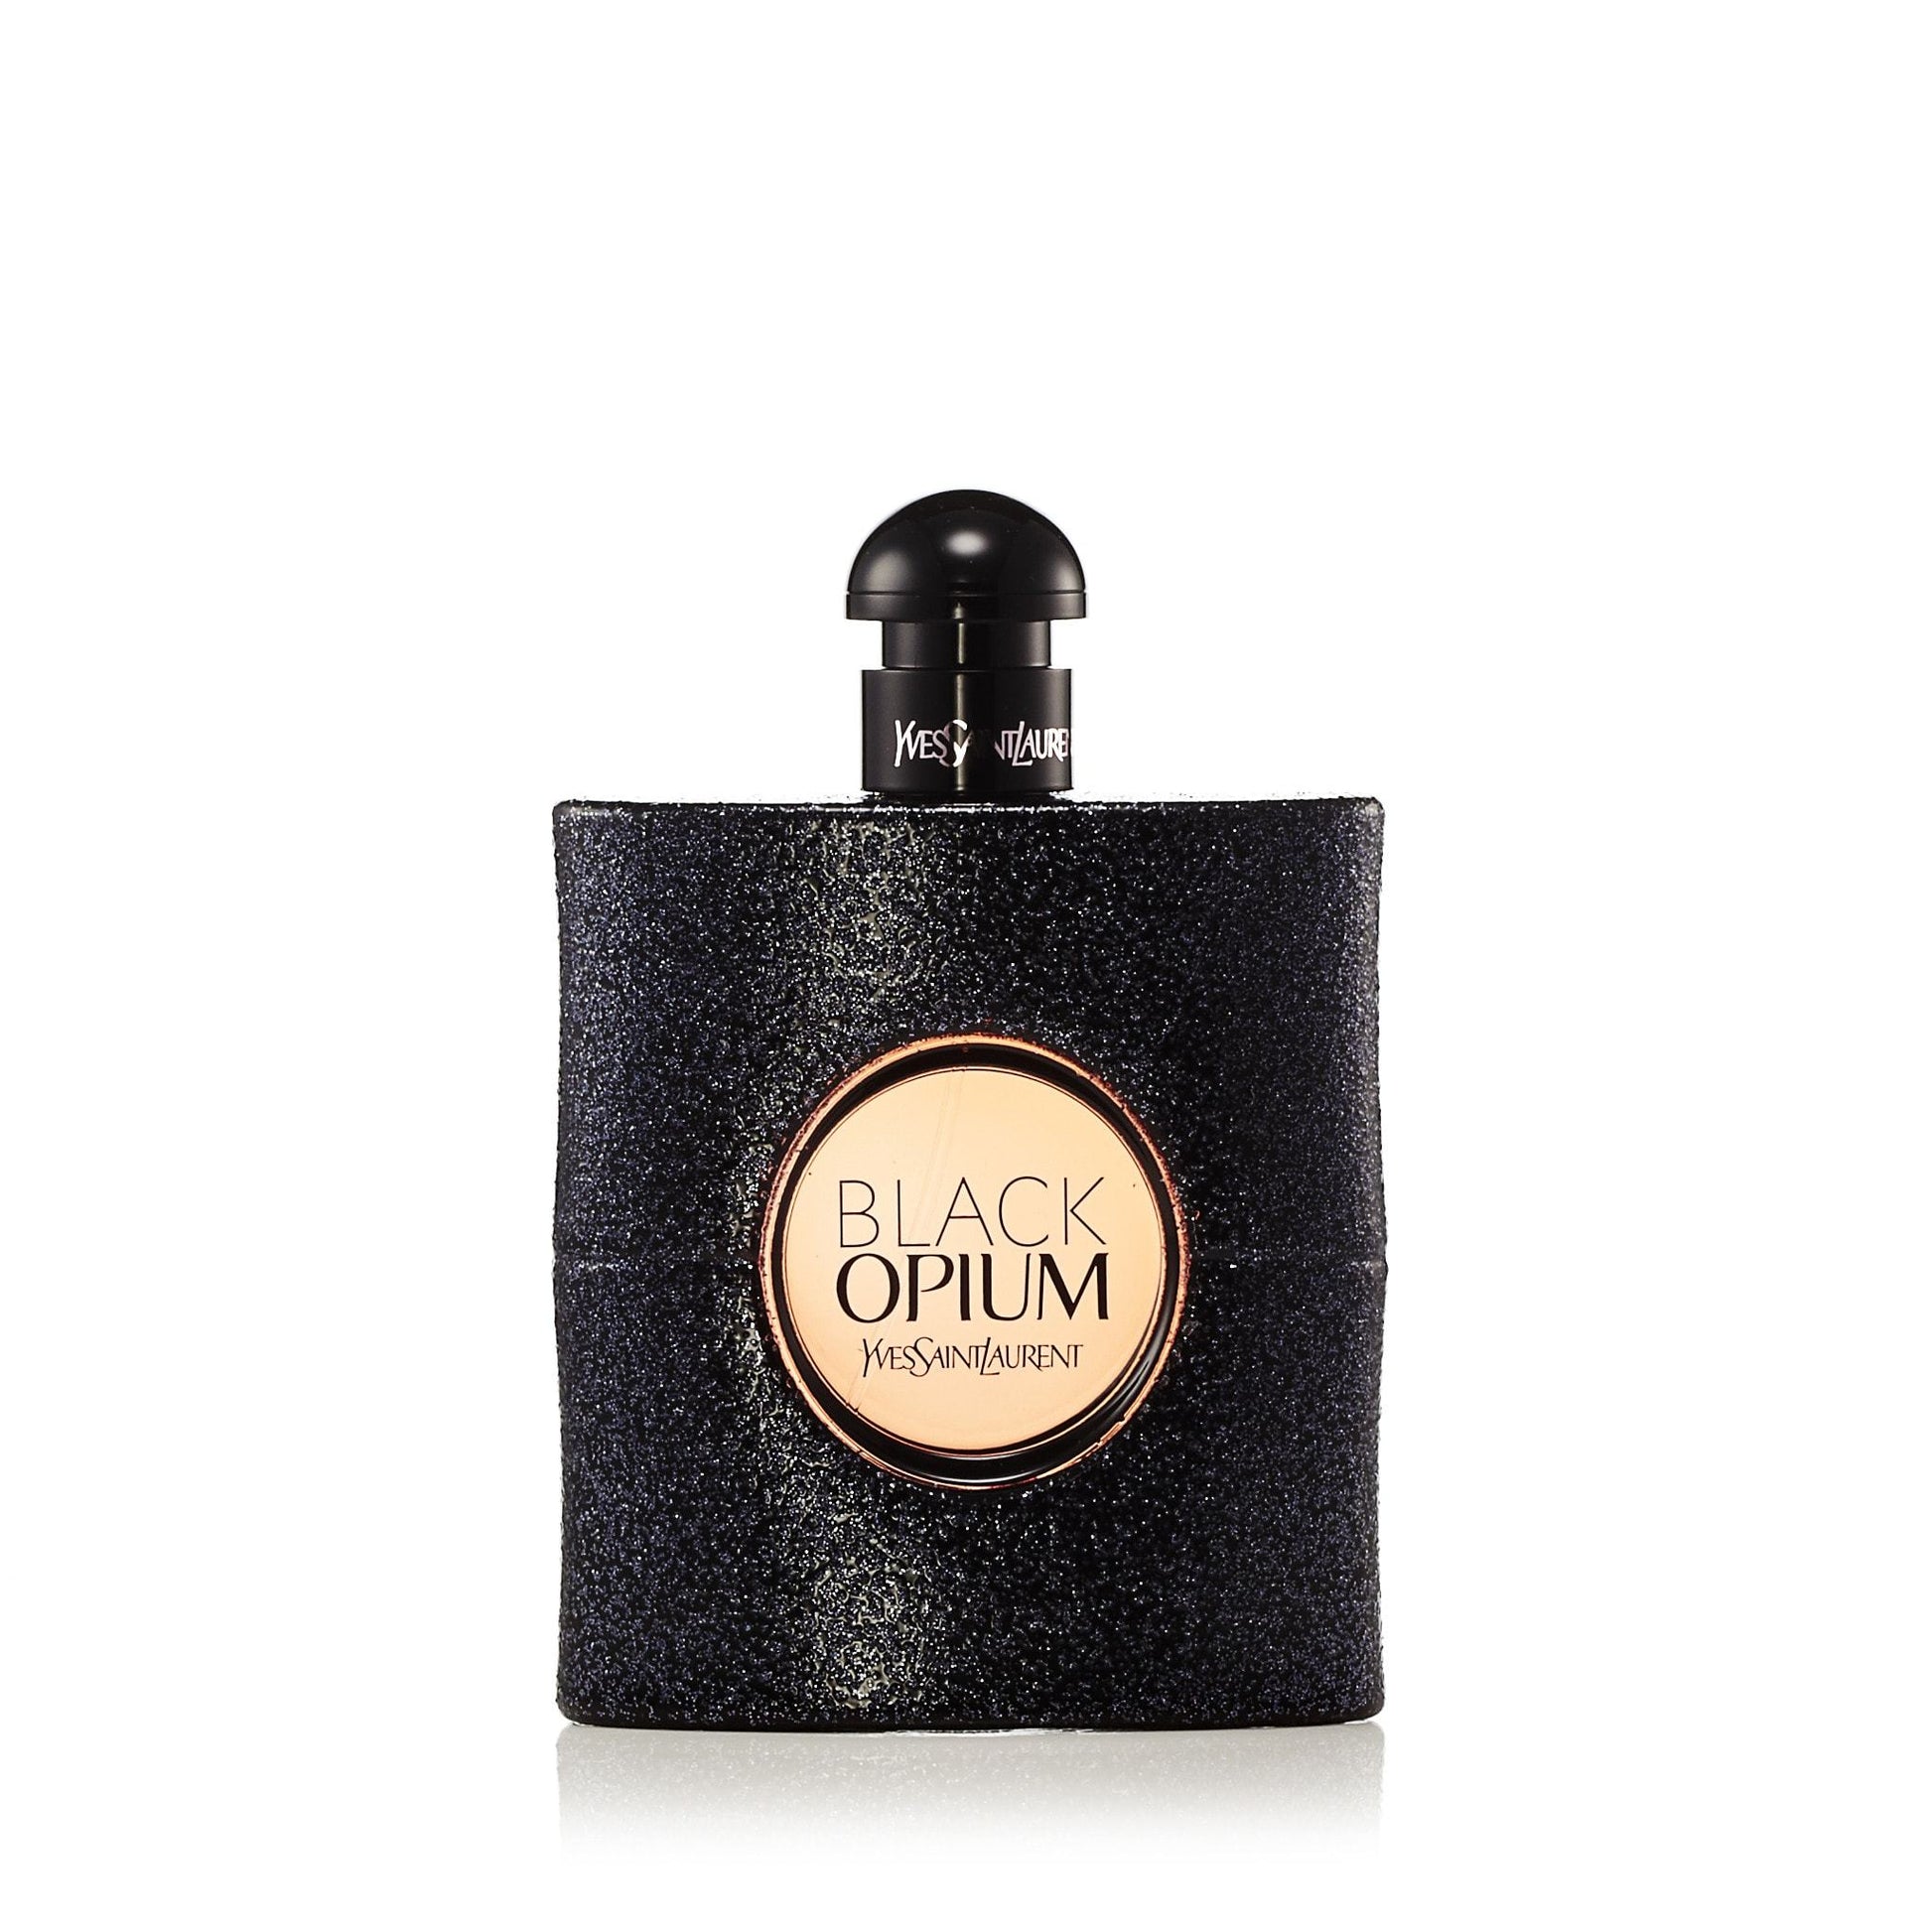 Black Opium Eau de Parfum Spray for Women by Yves Saint Laurent, Product image 2